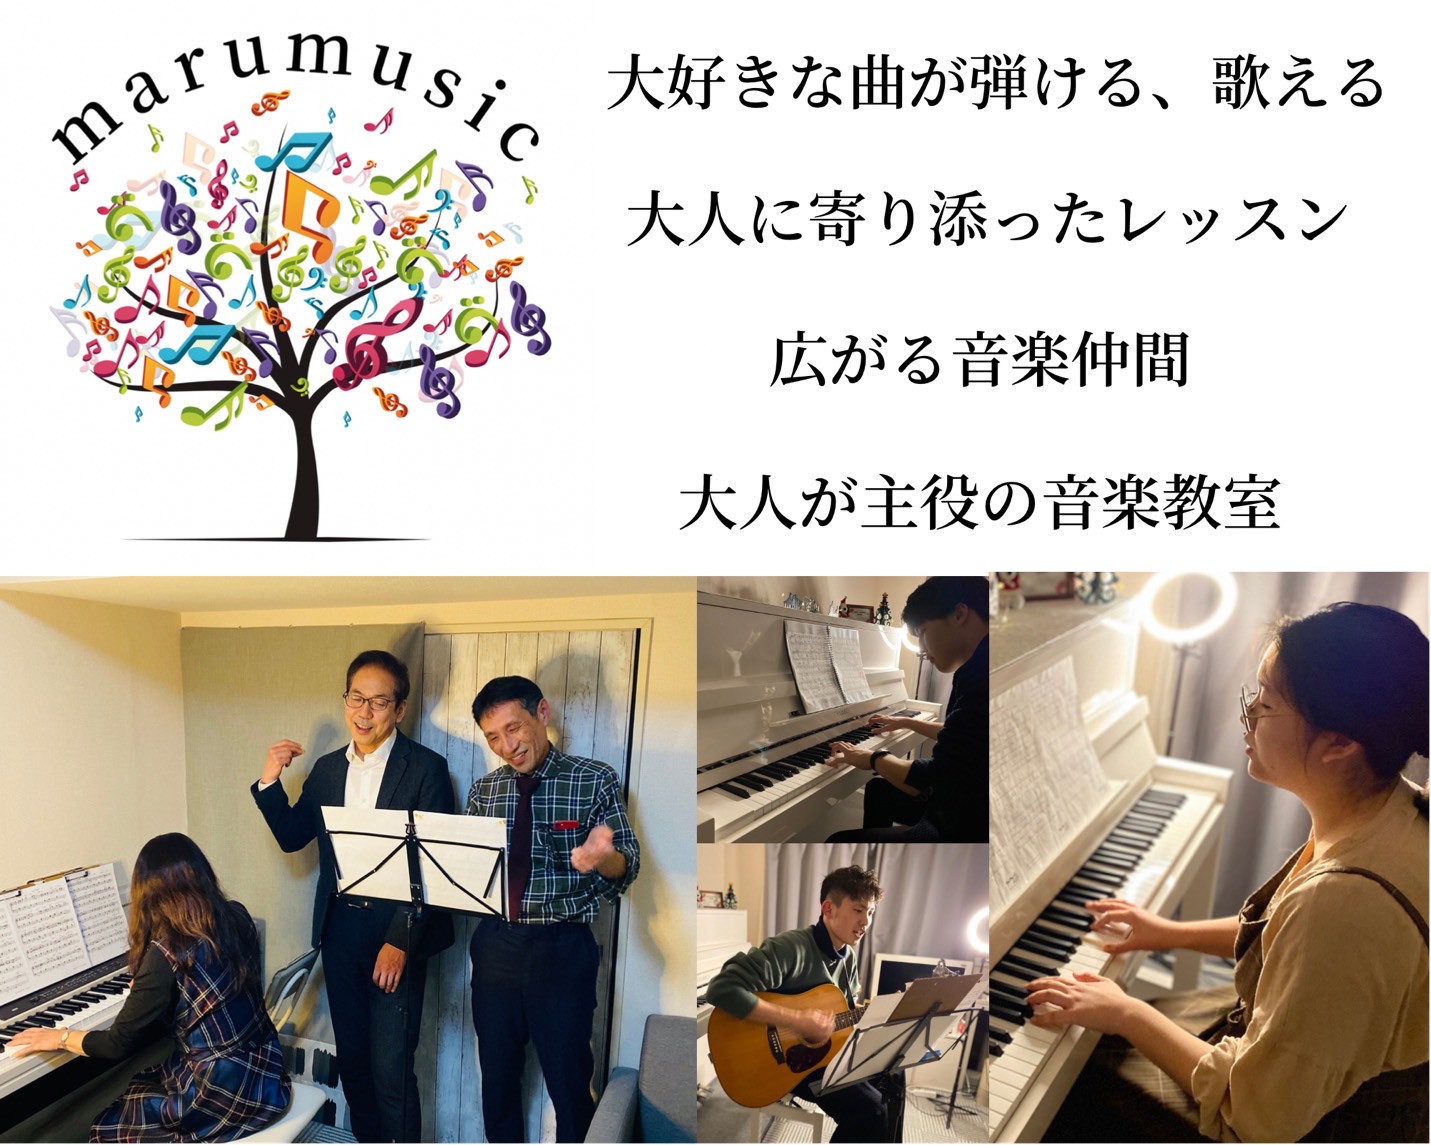 福岡市中央区天神にある大人のためのボーカル、ピアノ教室 - maru music